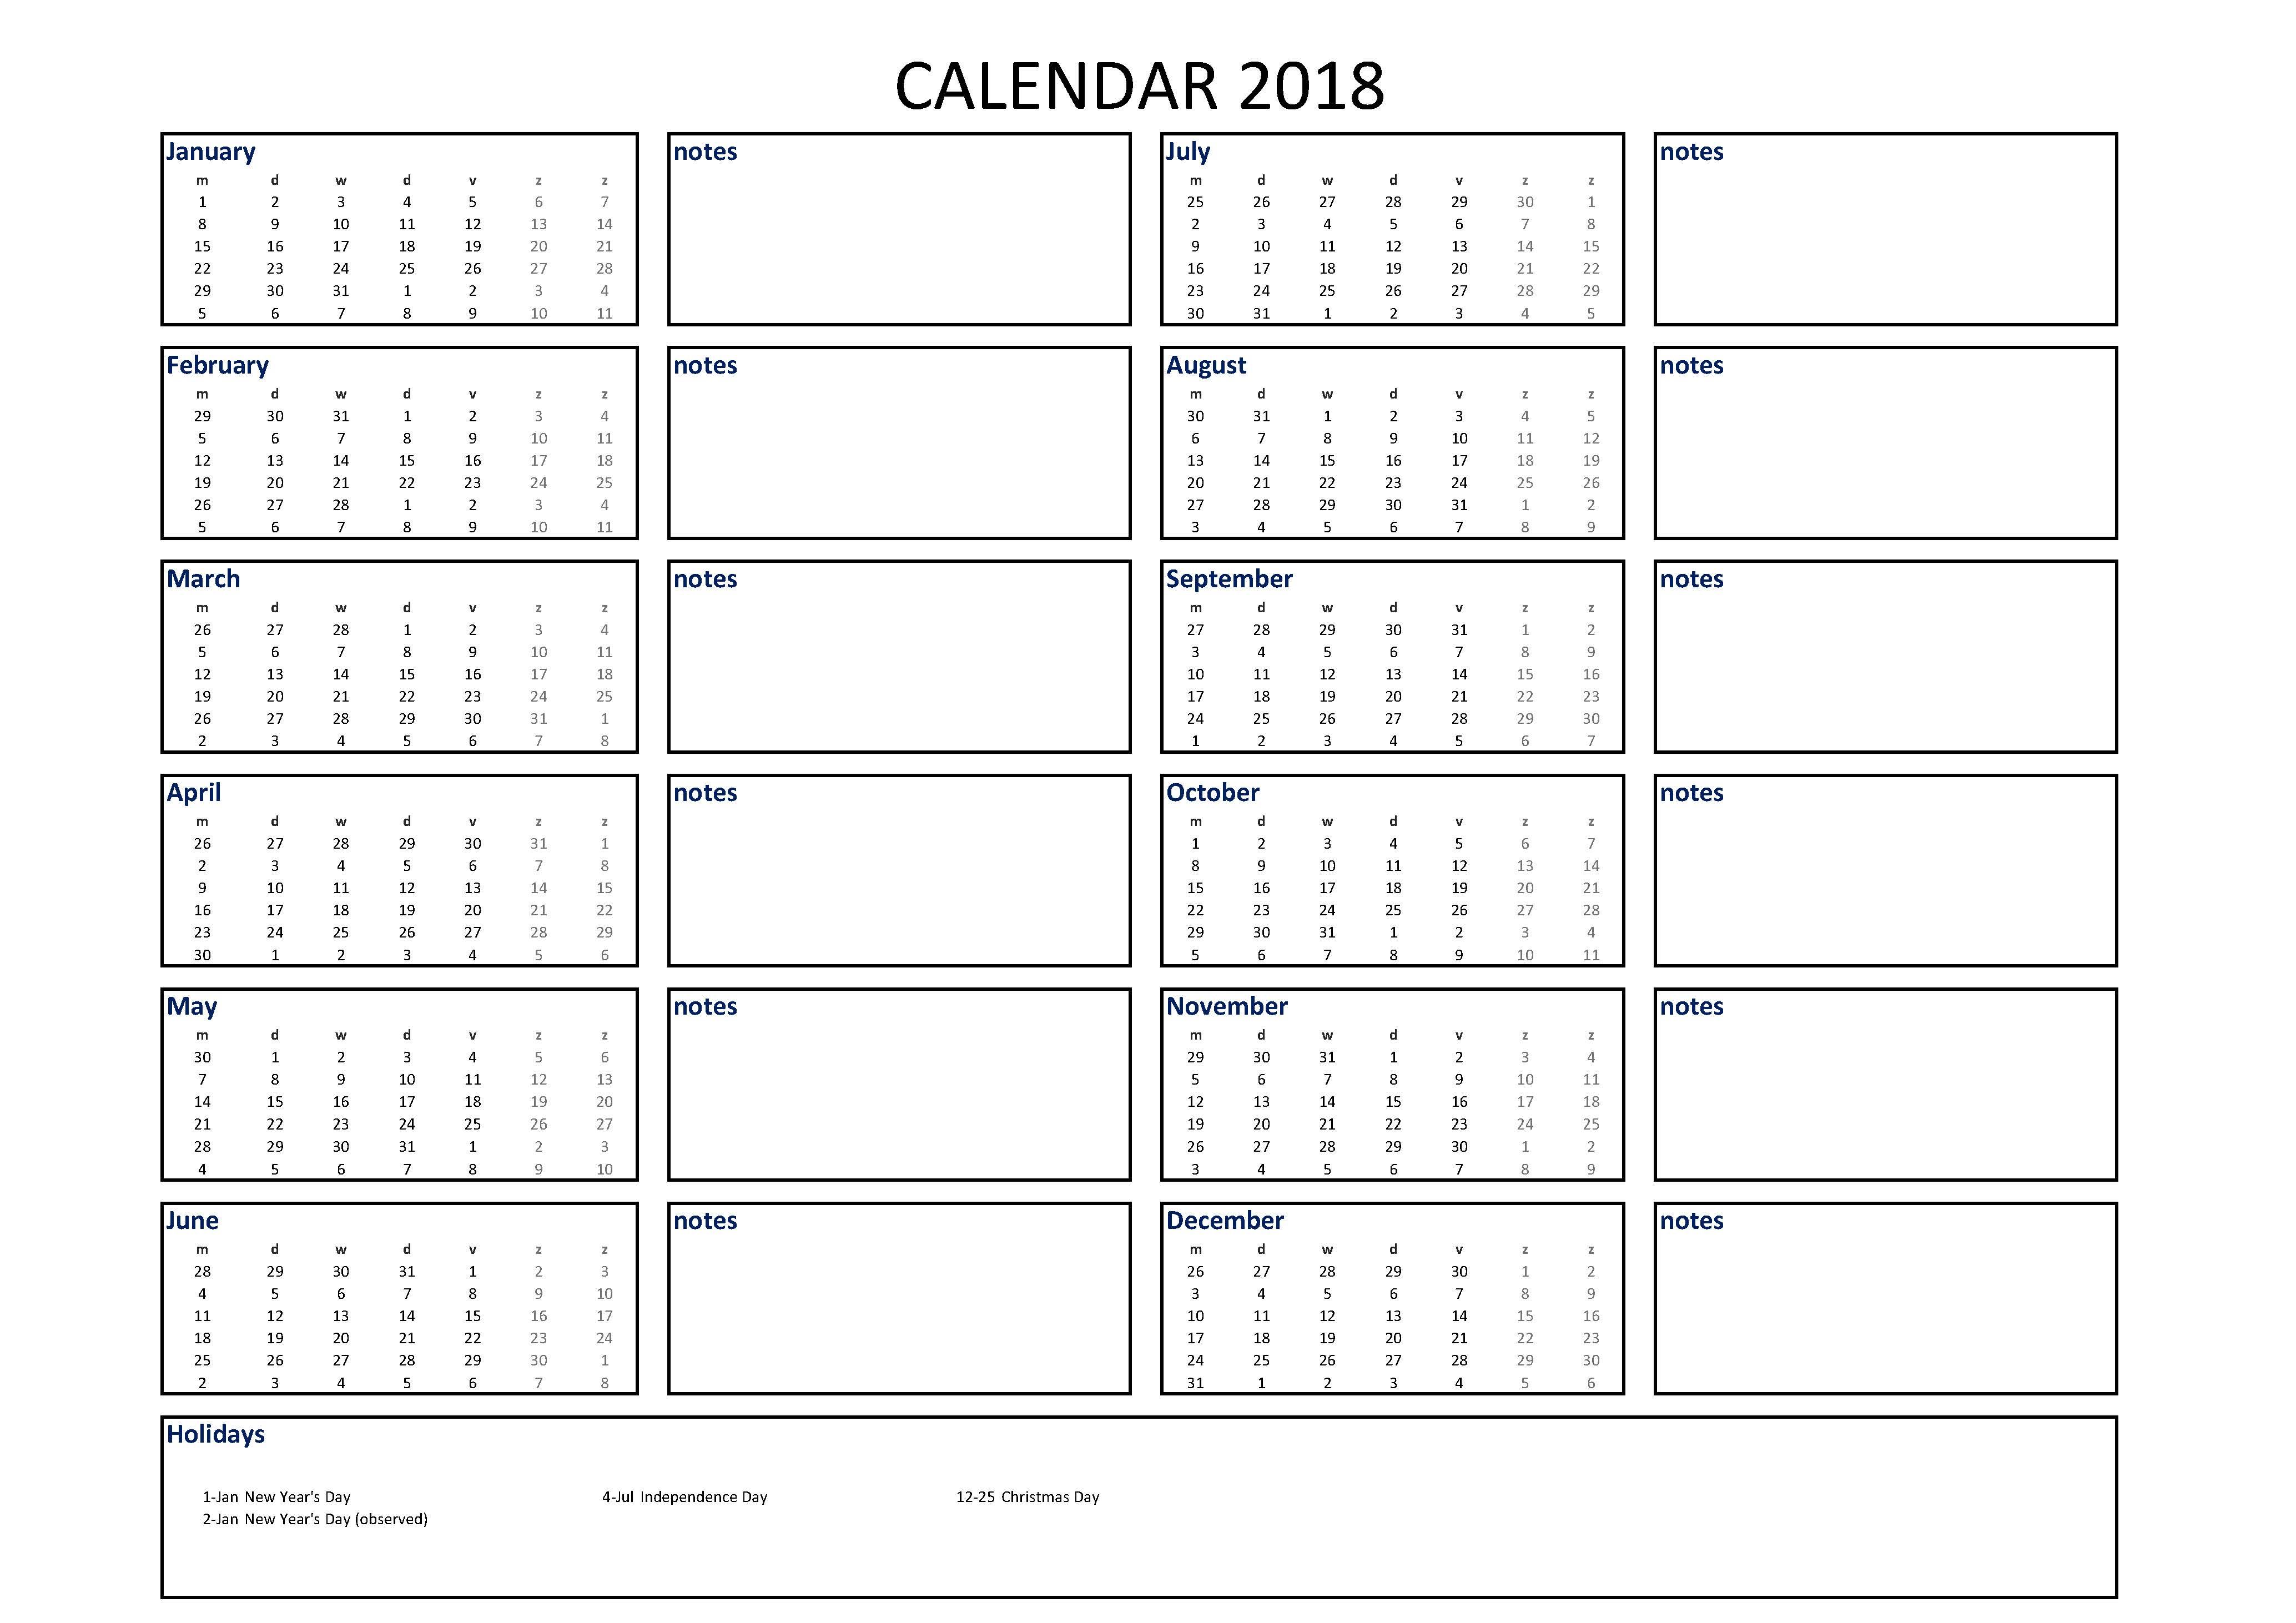 2018 calendar excel a4 size with notes modèles